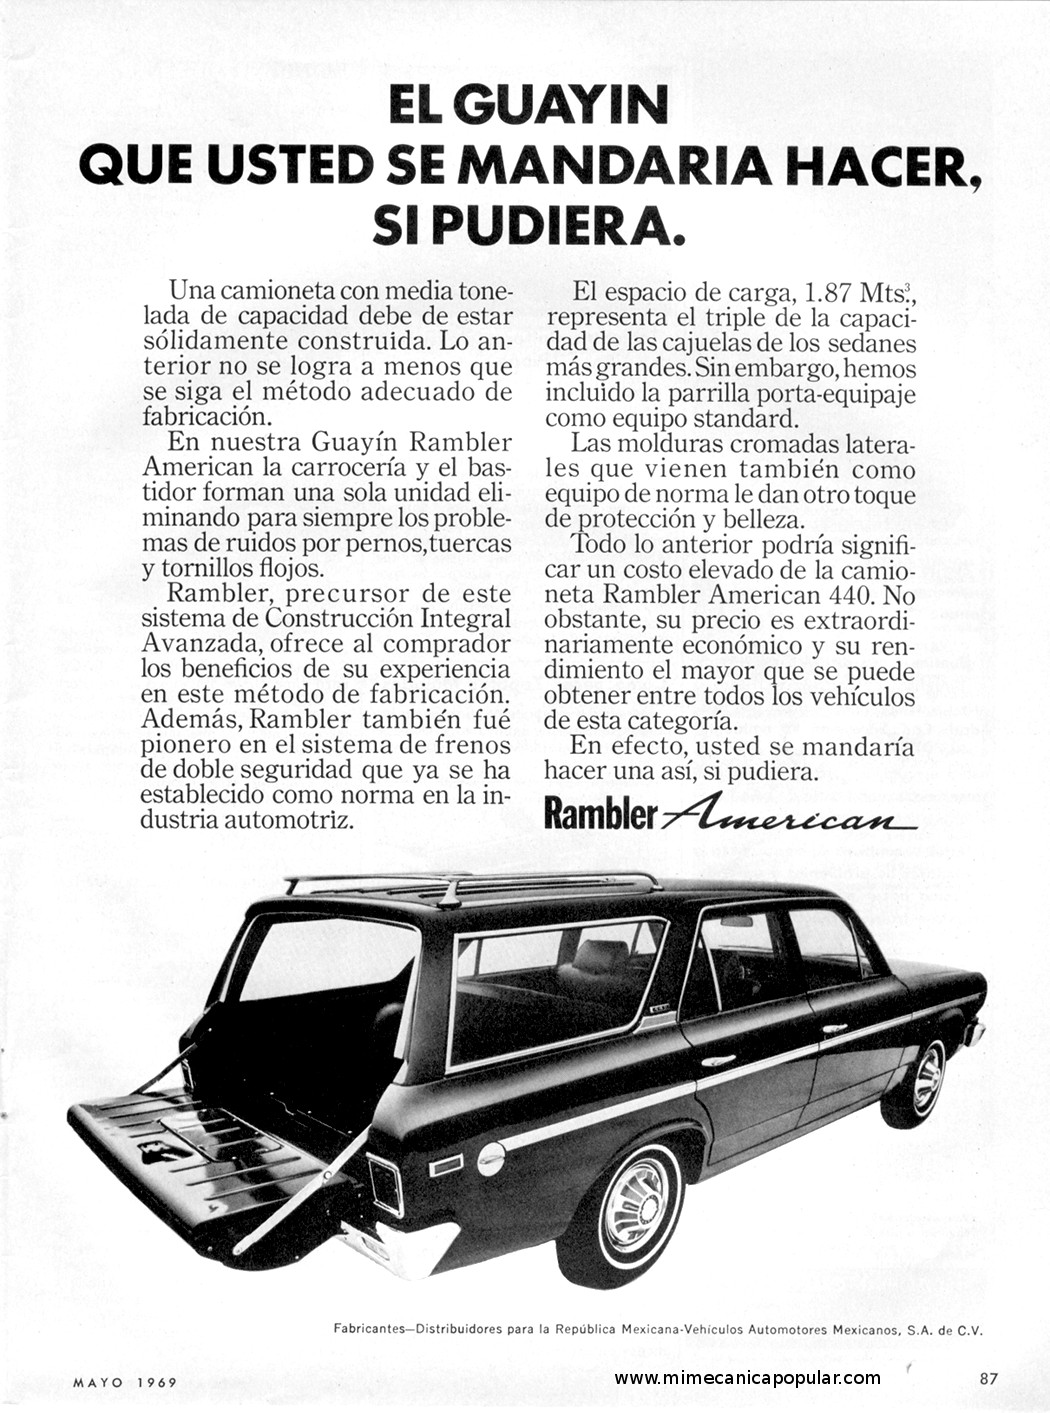 Publicidad - Guayin Rambler American - Mayo 1969